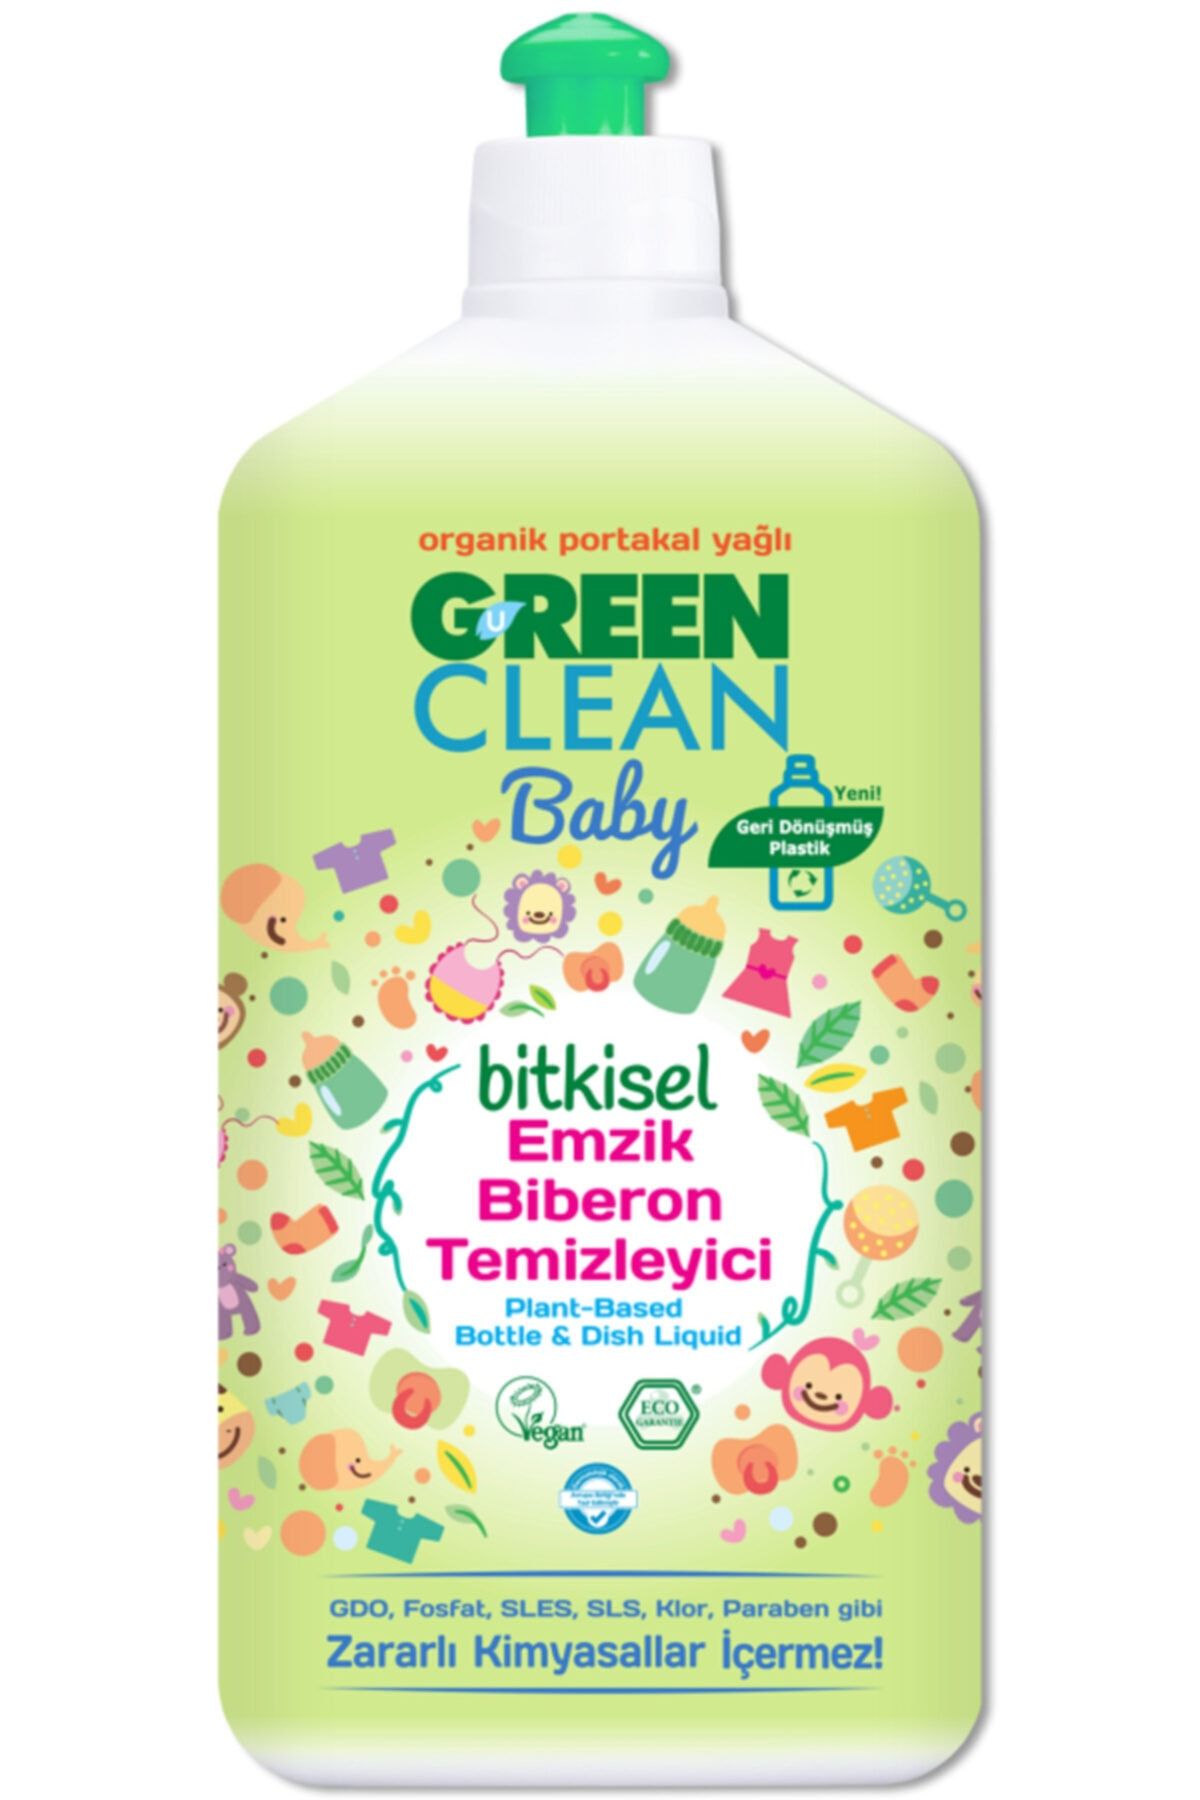 Green Clean Baby Bitkisel Organik Portakal Yağlı Emzik Biberon Temizleyici